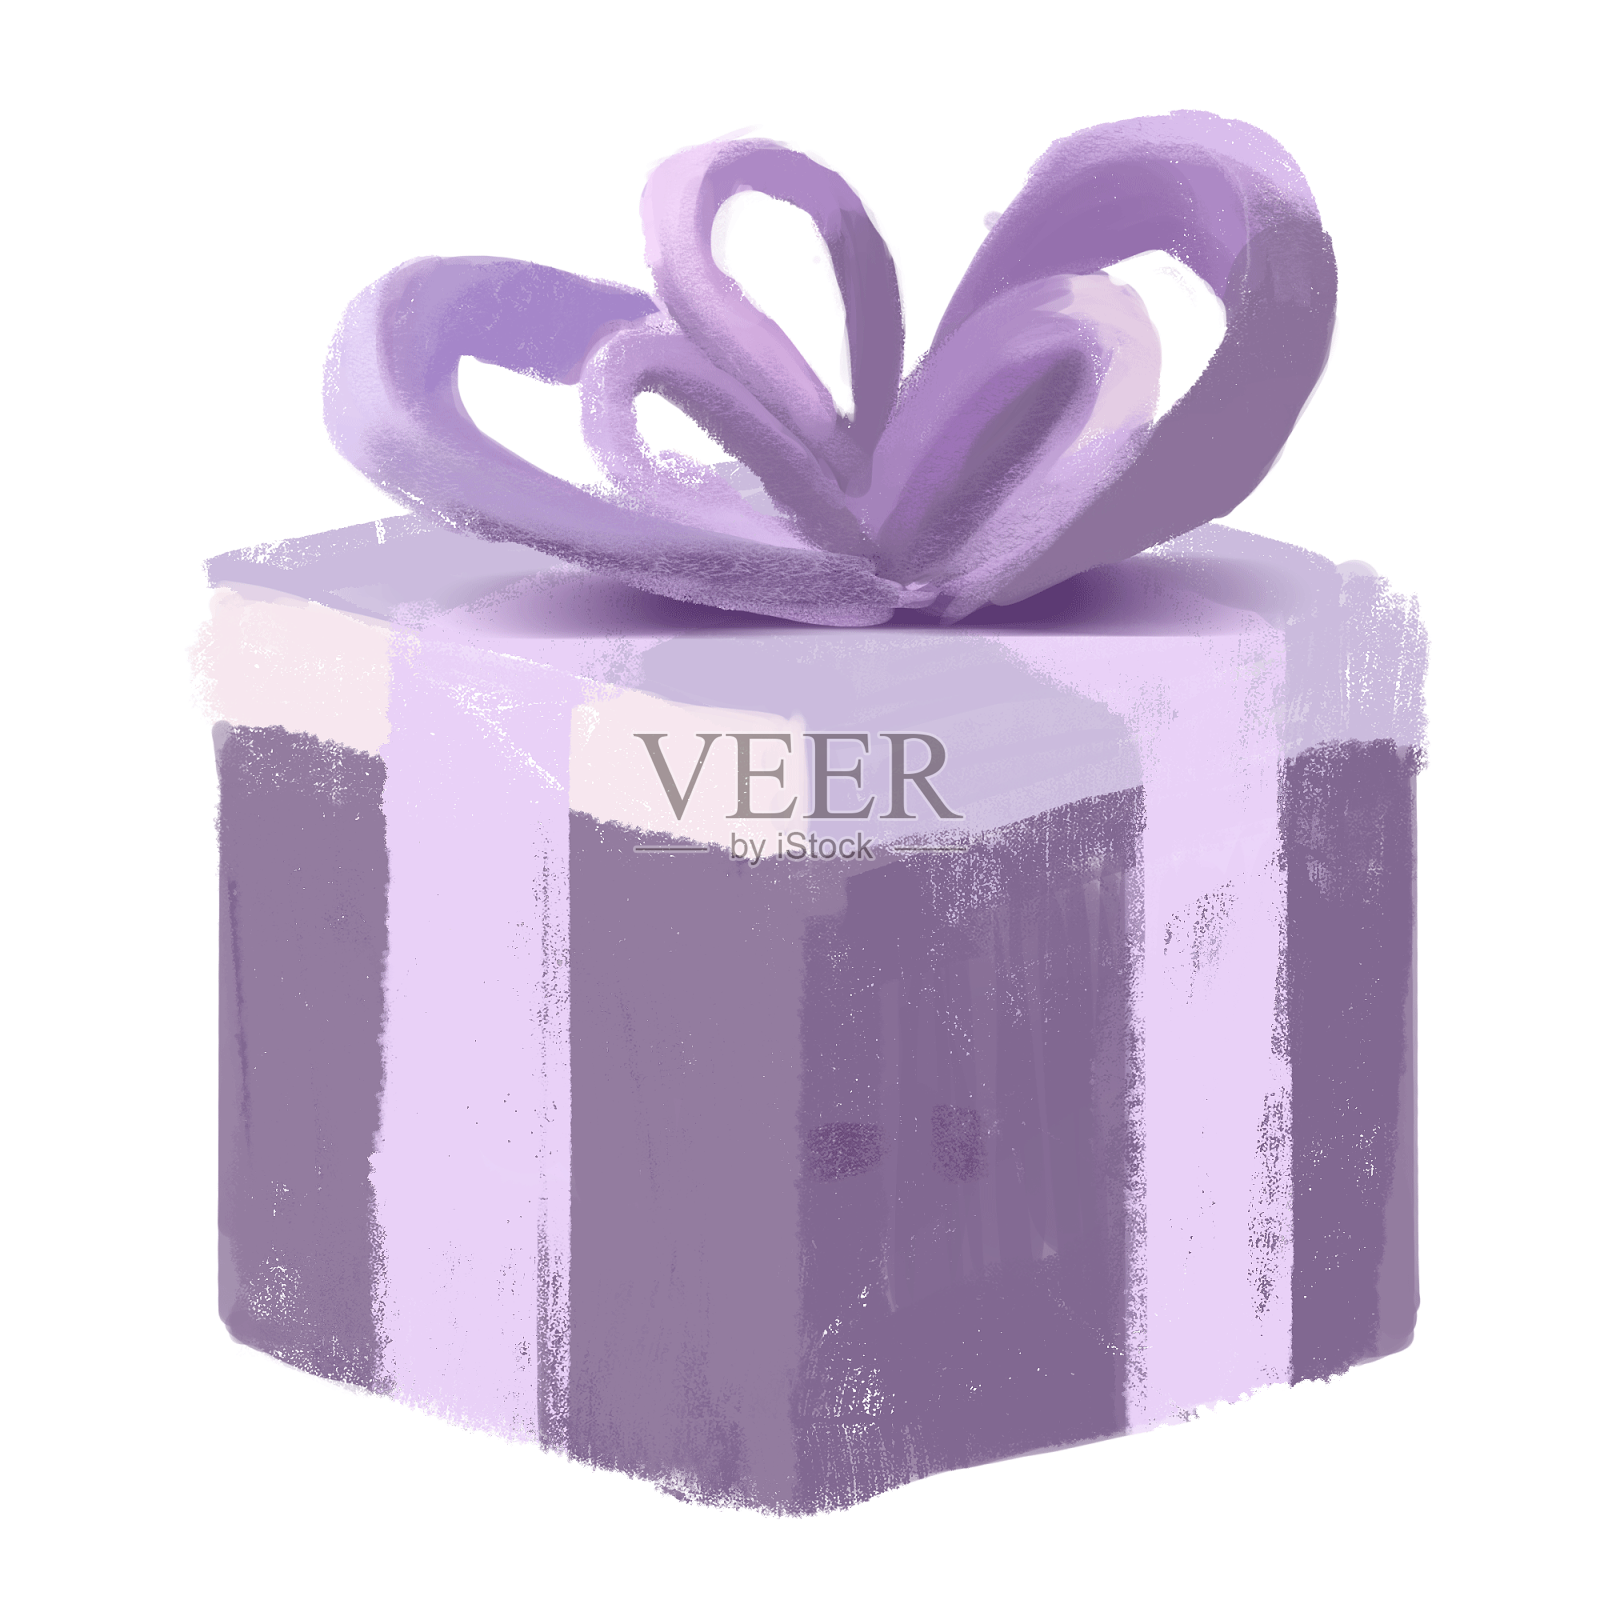 立体卡通手绘趣味紫色礼盒礼物包装盒png免扣素材设计元素图片